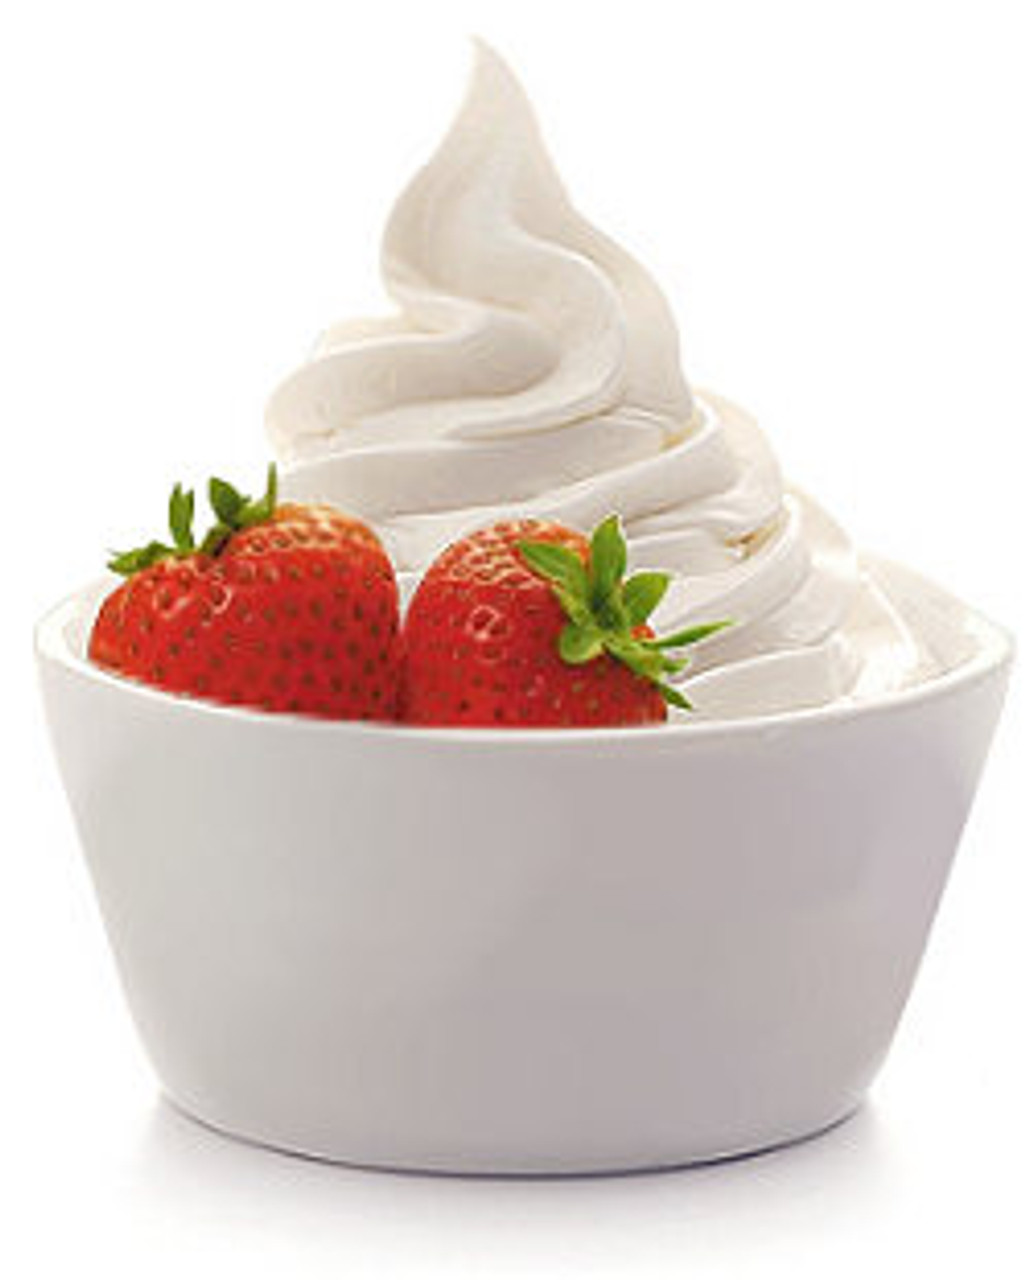 Creamy Plain Tart Frozen Yogurt Mix - Frozen Dessert Supplies